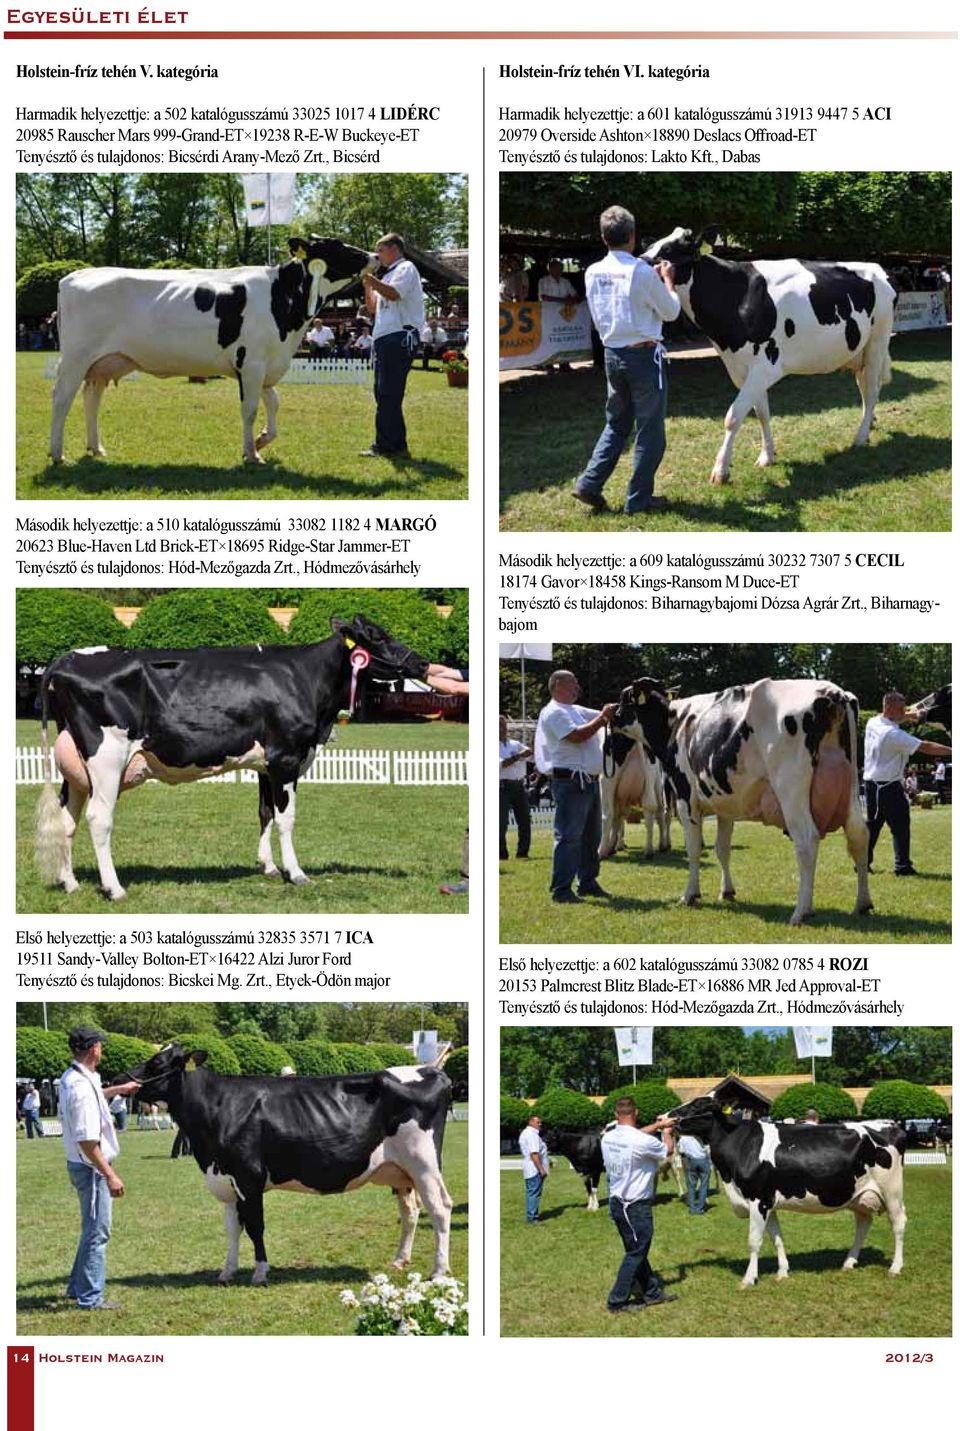 , Bicsérd Holstein-fríz tehén VI. kategória Harmadik helyezettje: a 601 katalógusszámú 31913 9447 5 ACI 20979 Overside Ashton 18890 Deslacs Offroad-ET Tenyésztő és tulajdonos: Lakto Kft.